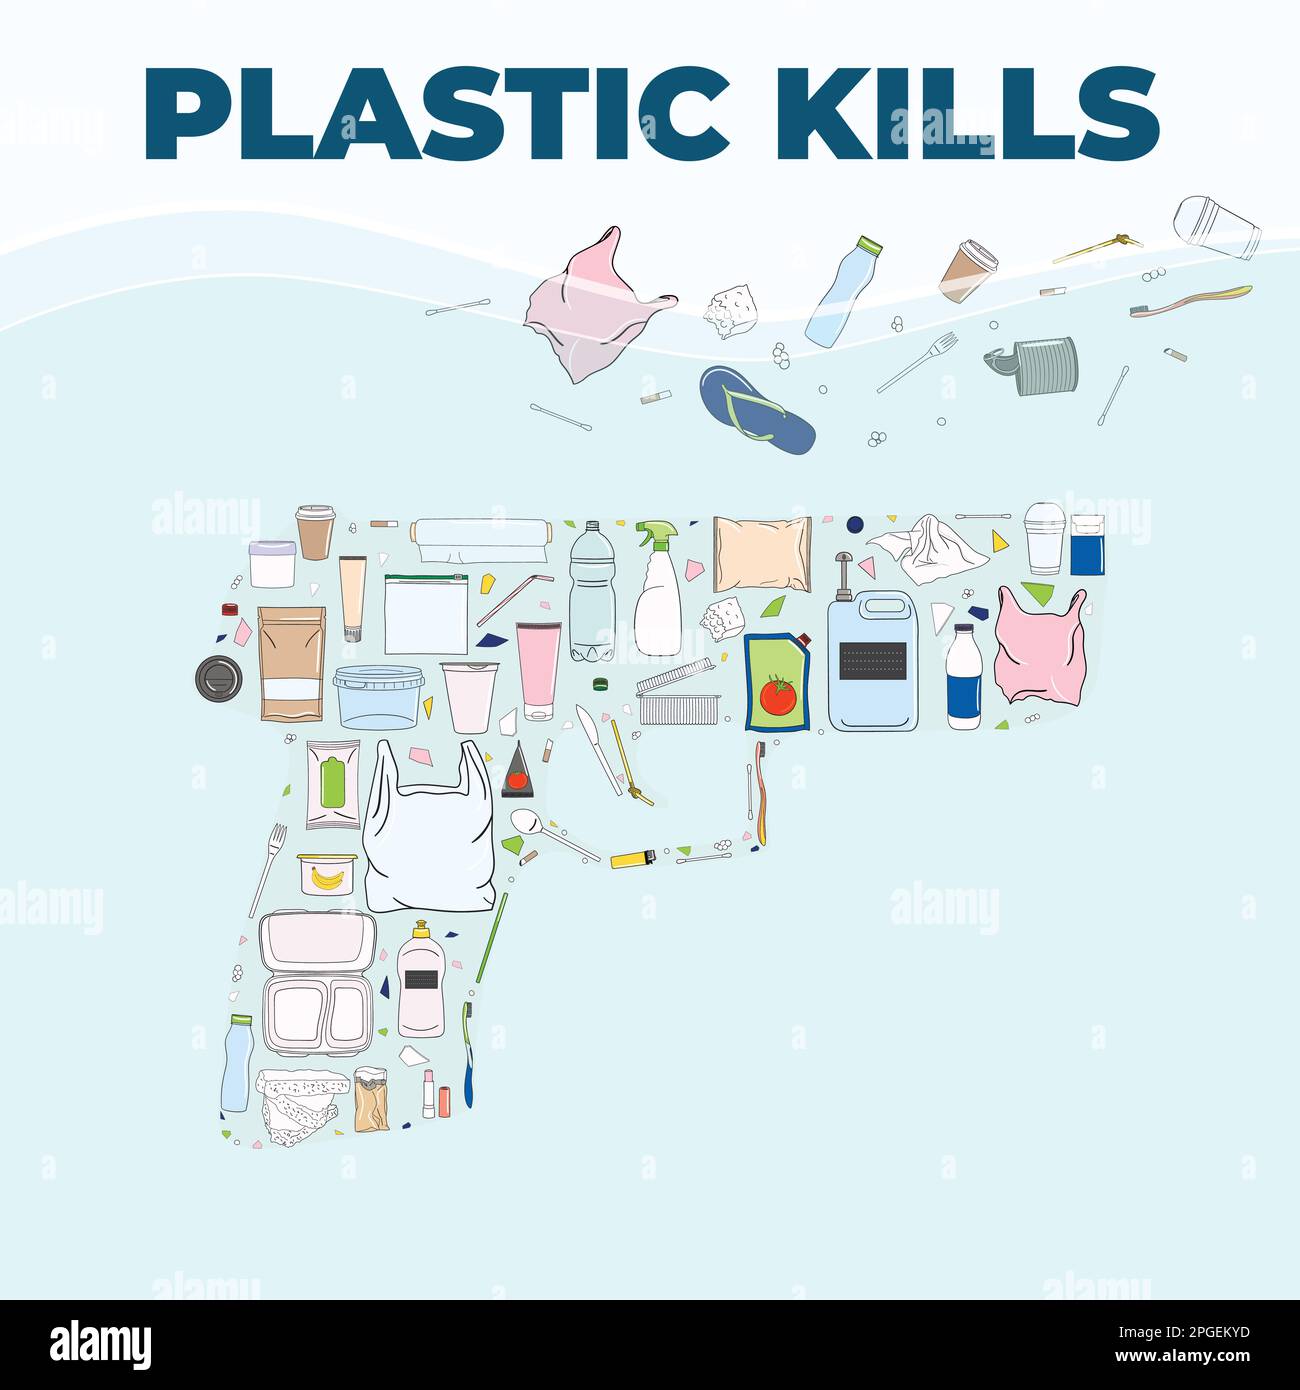 Plastikmüll in Gewehrform. Plastik tötet Poster. Meeresverschmutzung, Meeresverschmutzung, Küstenverschmutzung. Globale Umweltprobleme. Rette das Ozean-Konzept. Hand dra Stock Vektor